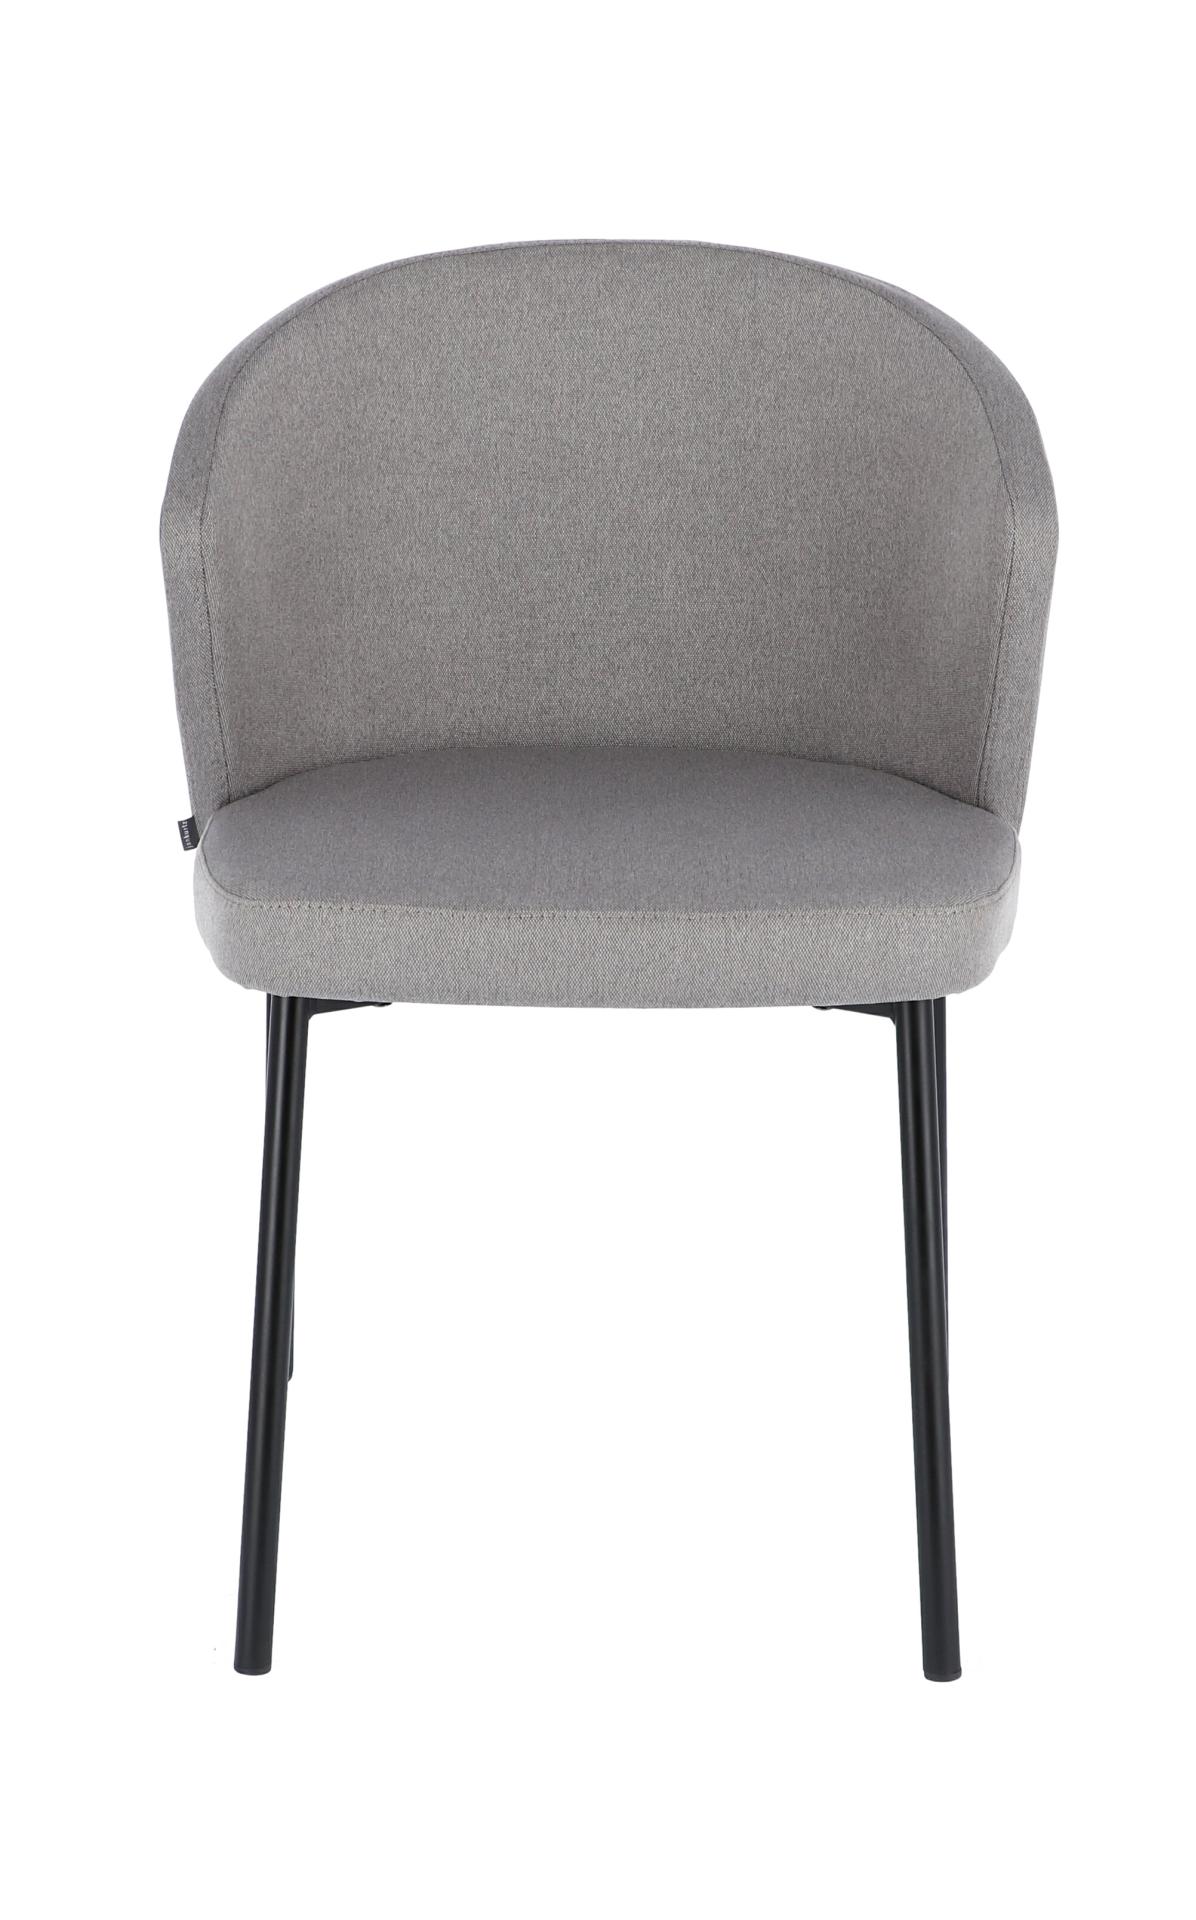 Der moderne Stuhl Mila wurde aus einem Metall Gestell hergestellt. Die Sitz- und Rückenfläche ist aus einem Stoff Bezug. Die Farbe des Stuhls ist Hellgrau. Es ist ein Produkt der Marke Jan Kurtz.